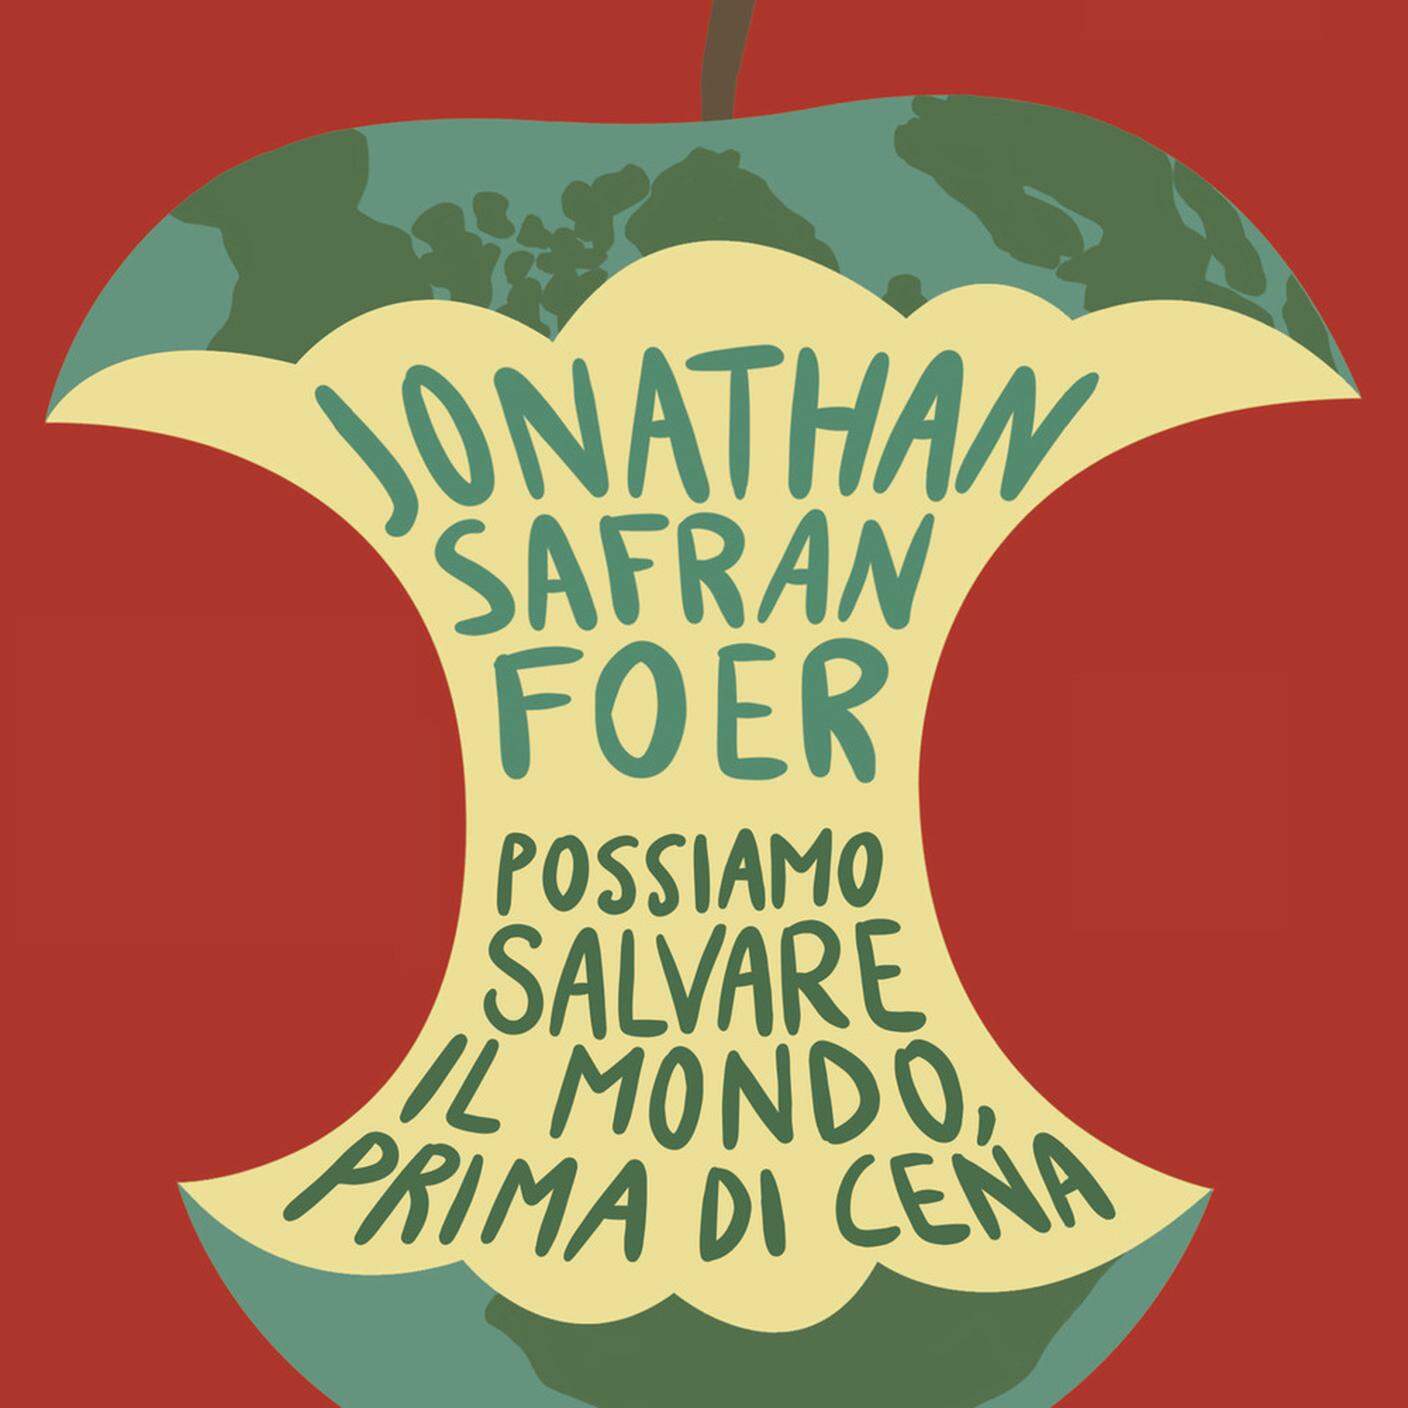 Jonathan Safran Foer, "Possiamo salvare il mondo, prima di cena", Guanda Editore (dettaglio copertina)